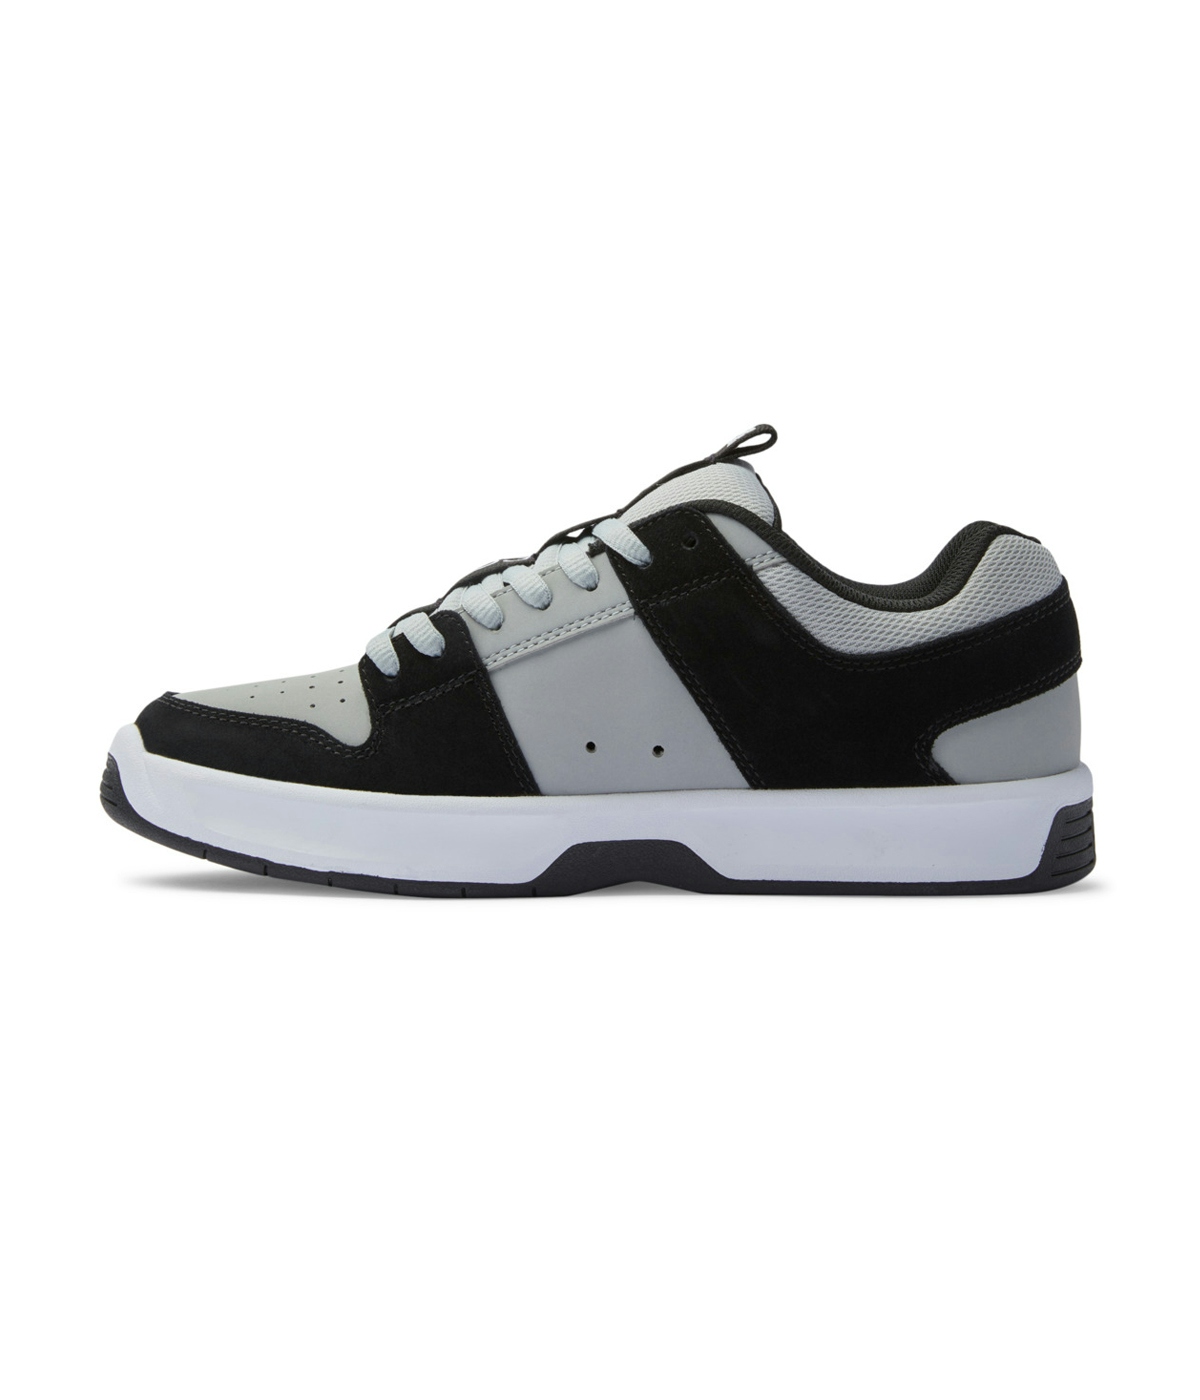 DC Shoes Lynx Zero Shoes Black/Grey/White 2